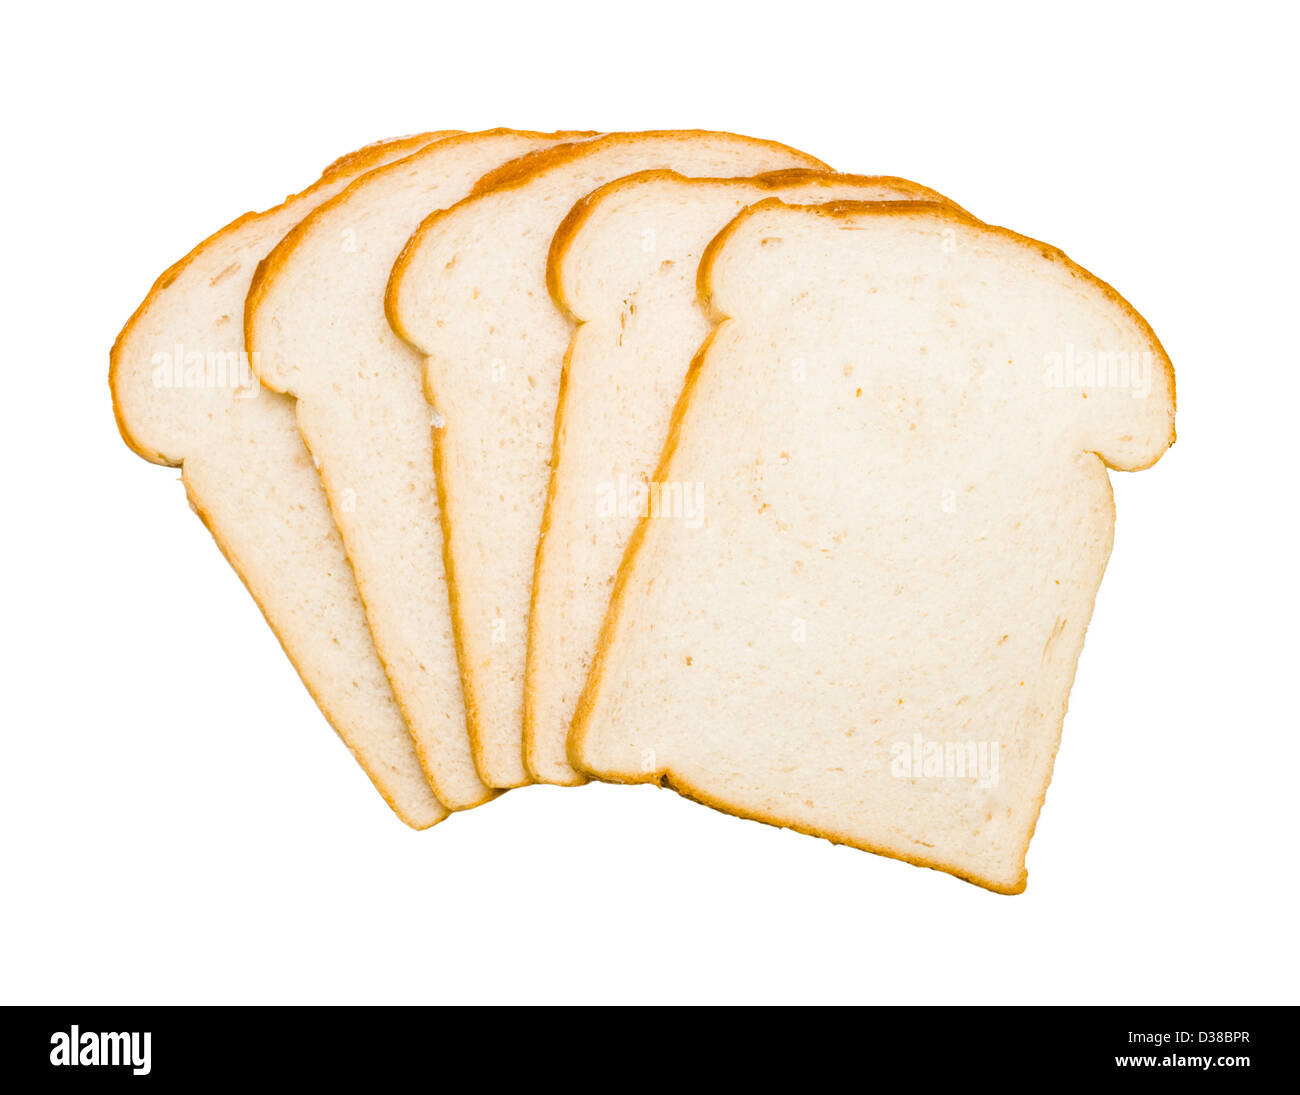 Tranches de pain blanc. Banque D'Images